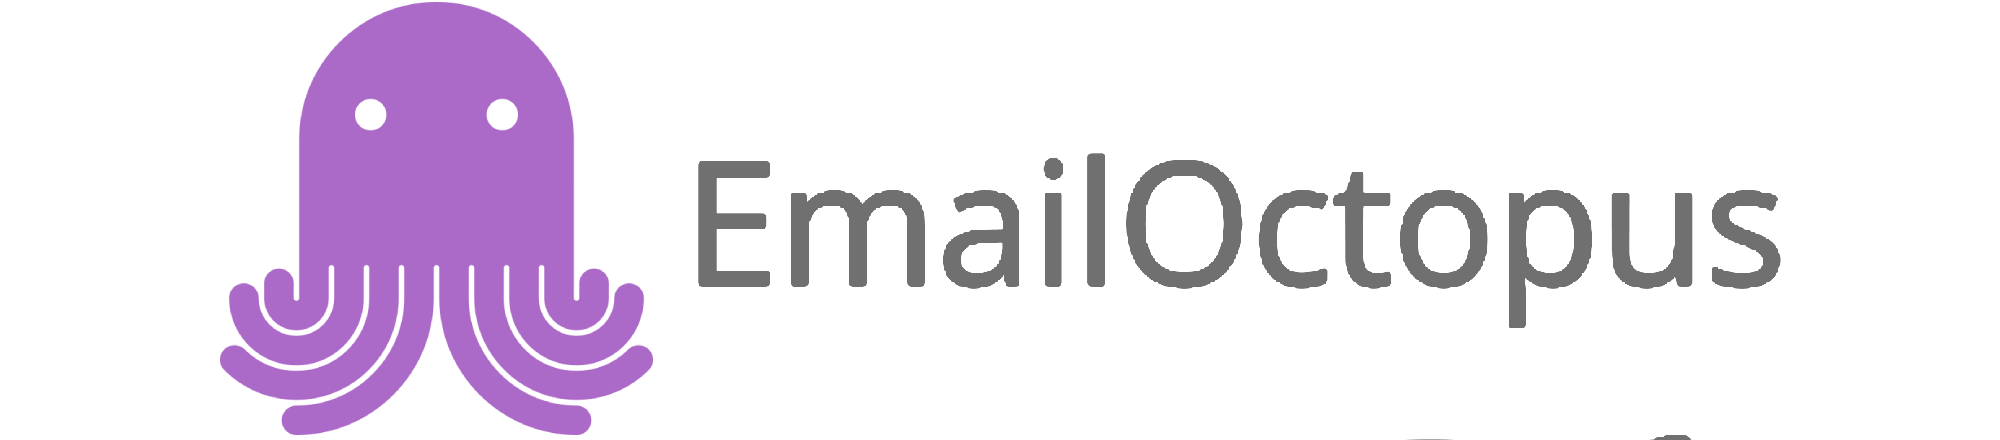 Emailoctopus Logo